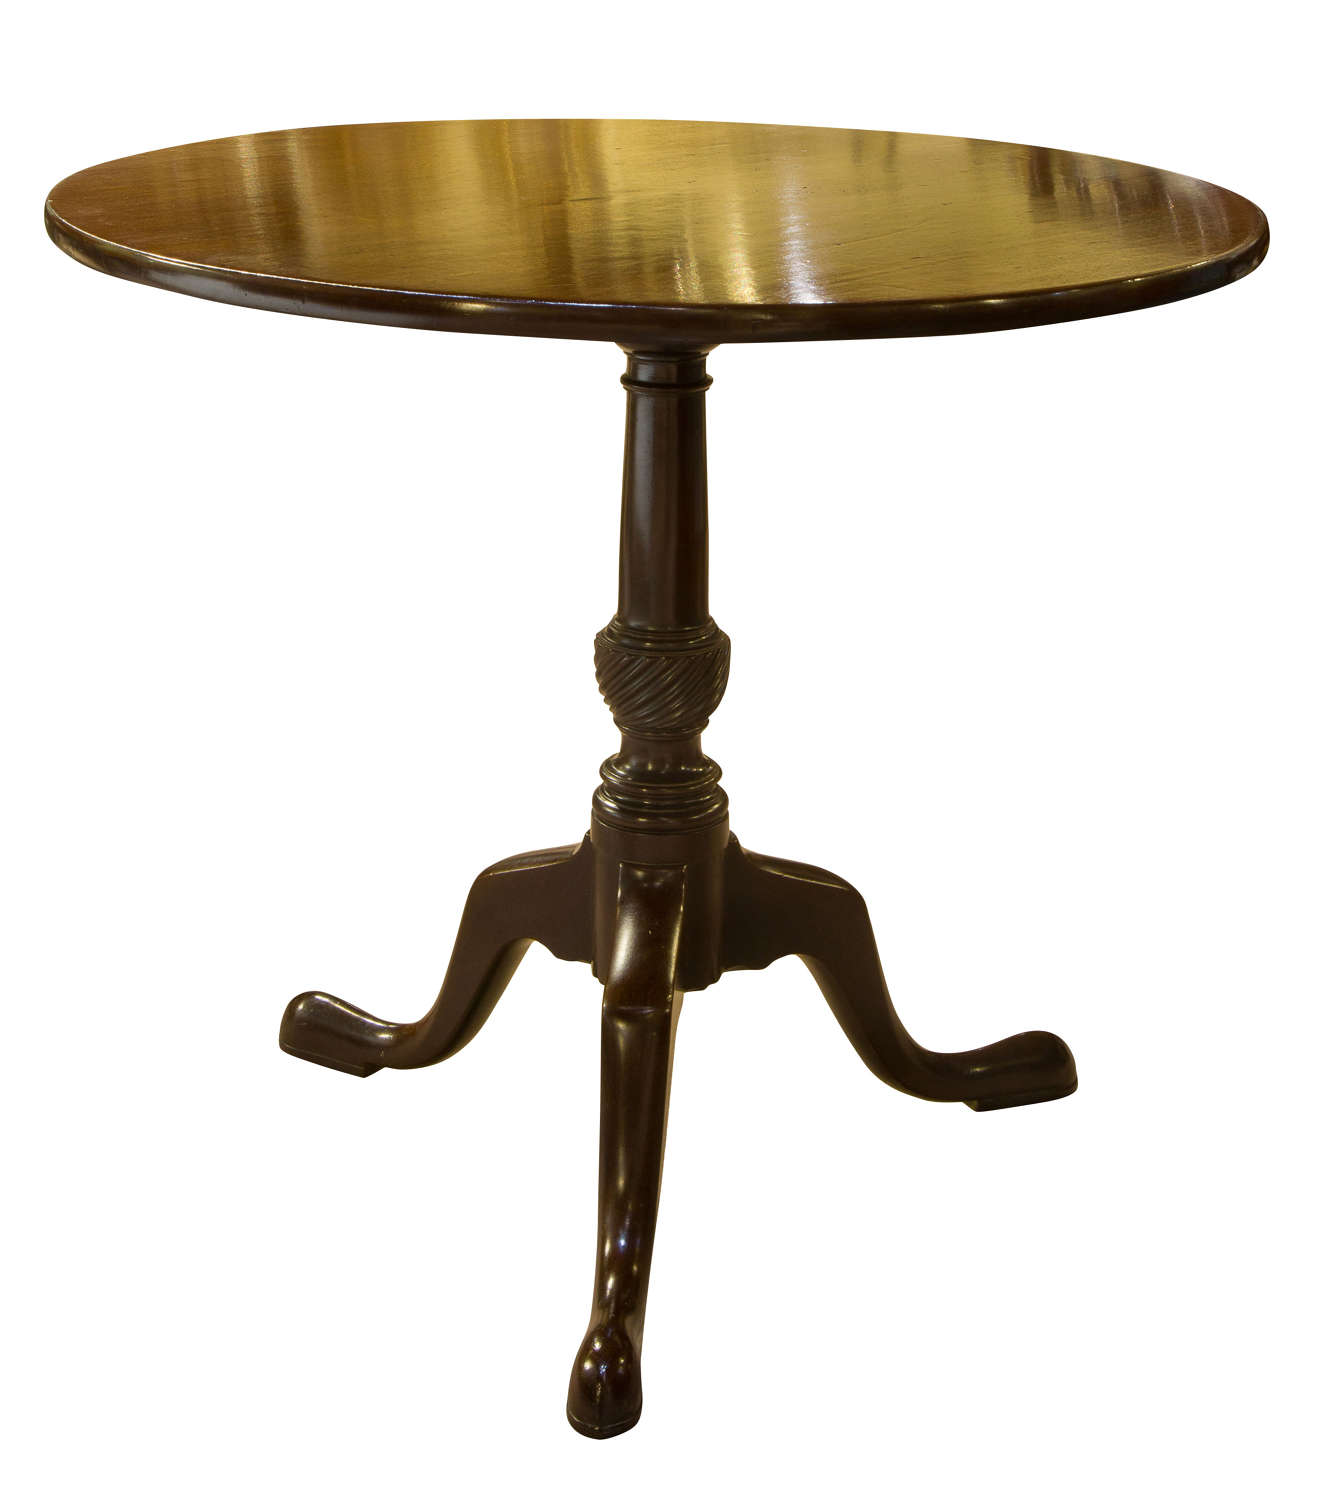 18thc mahogany circular table